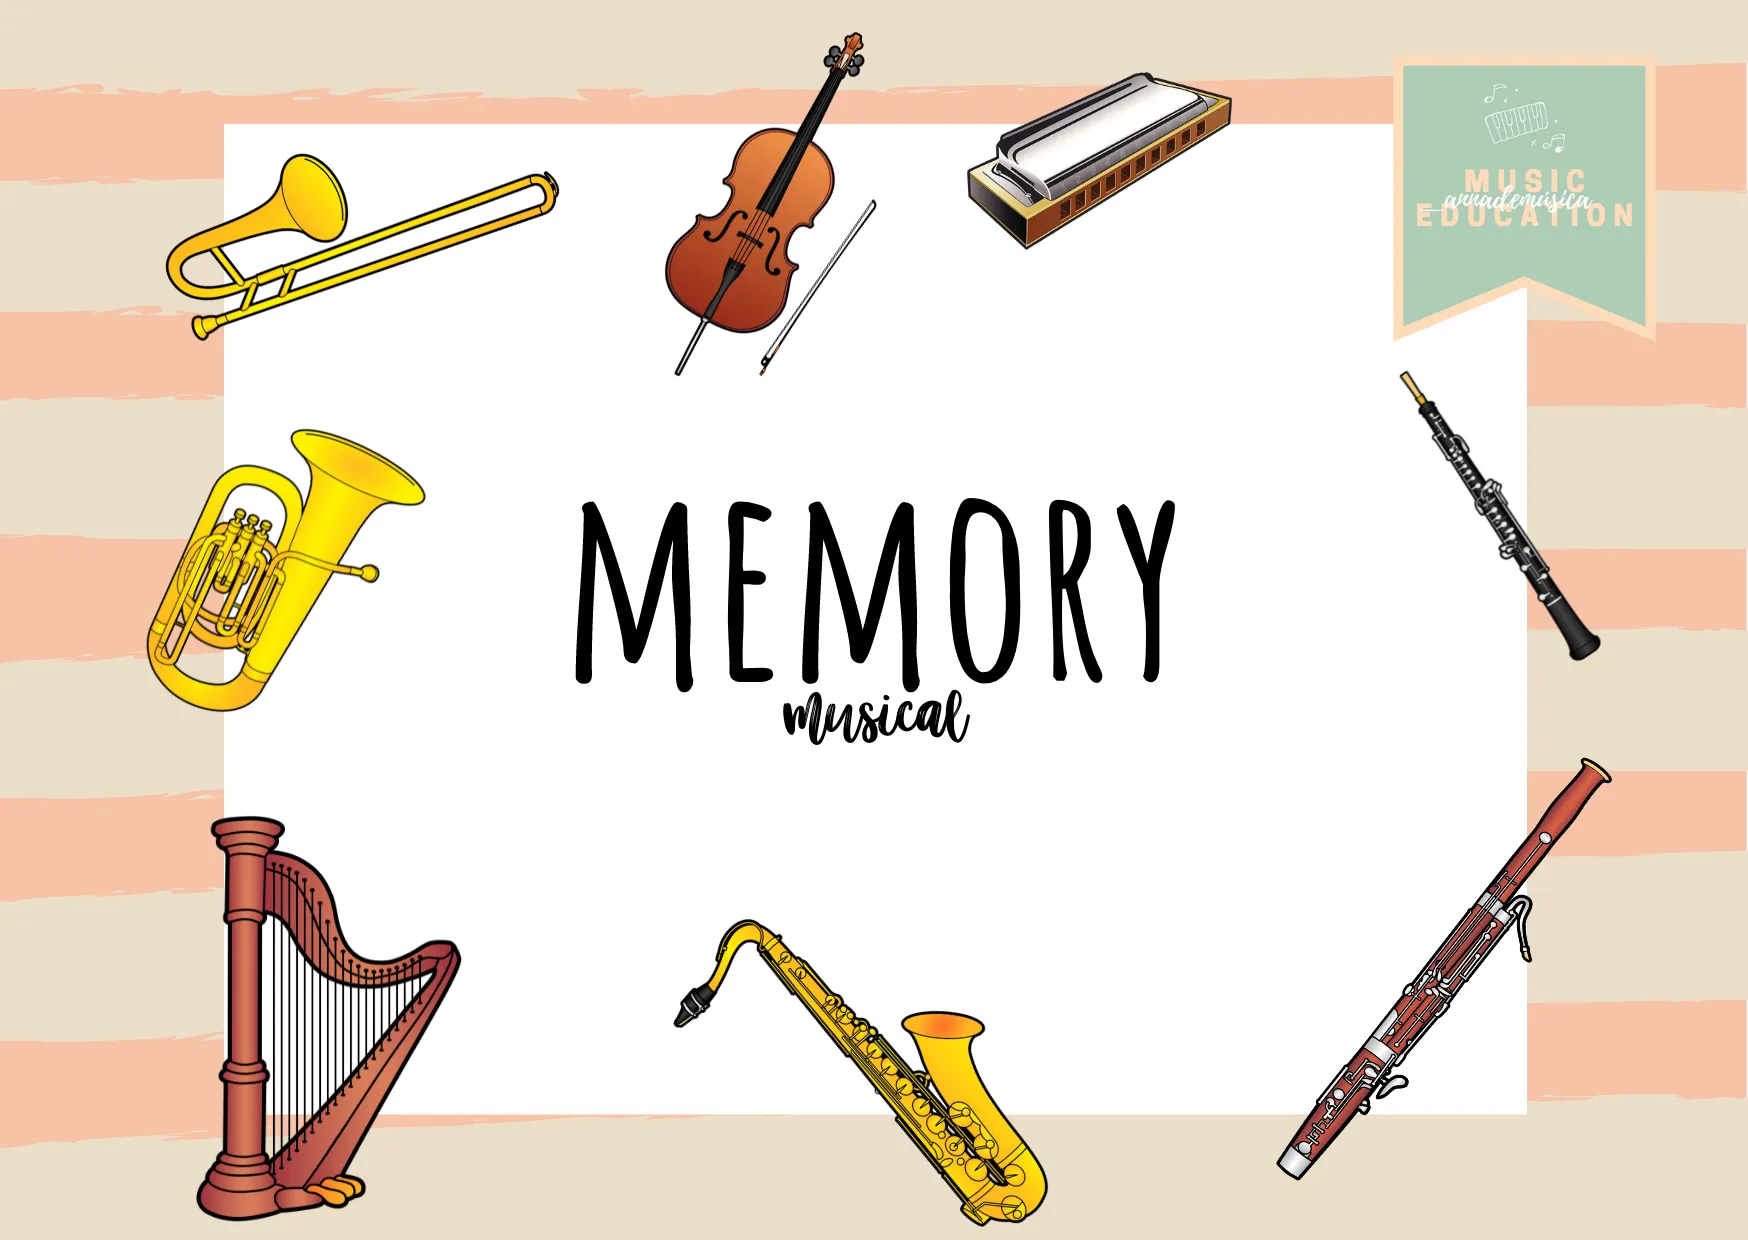 Memory musical